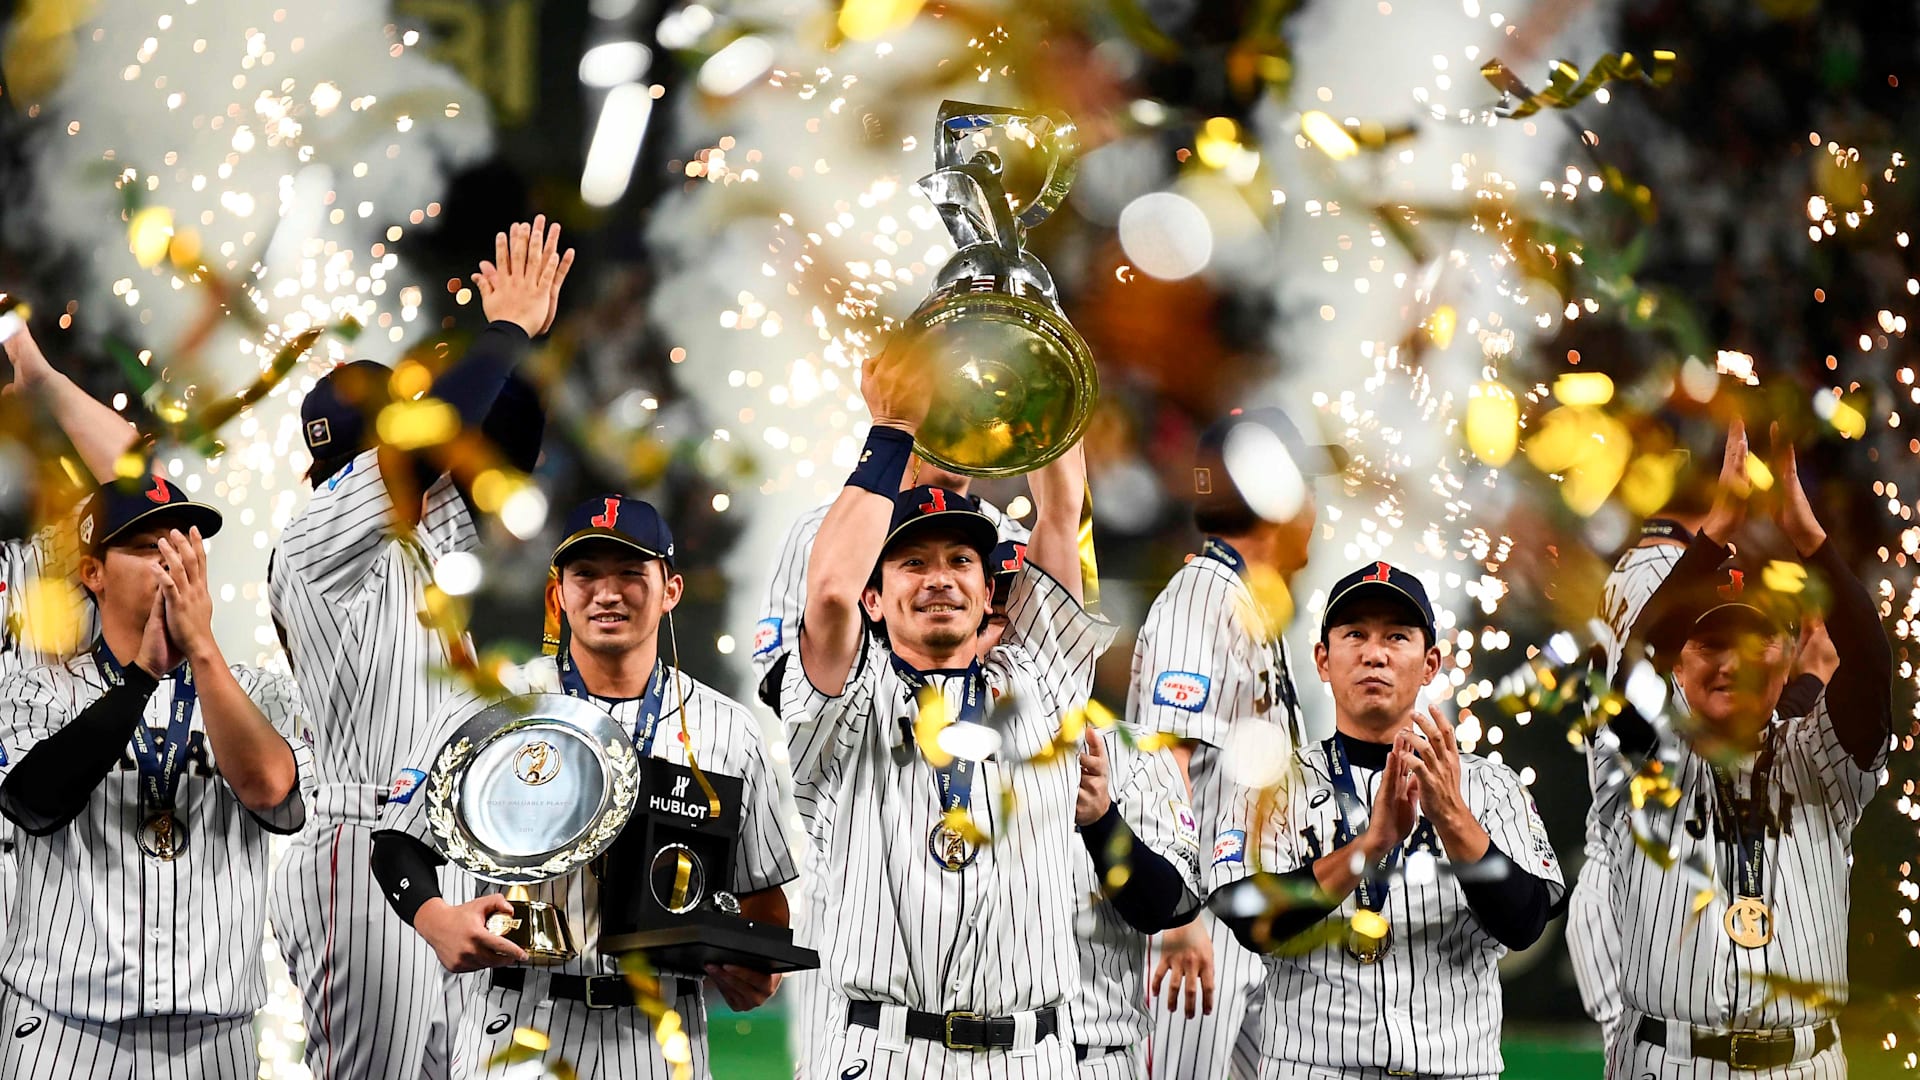 Wbsc世界野球プレミア12で 侍ジャパン が悲願の初優勝 韓国 メキシコが東京五輪出場権を獲得